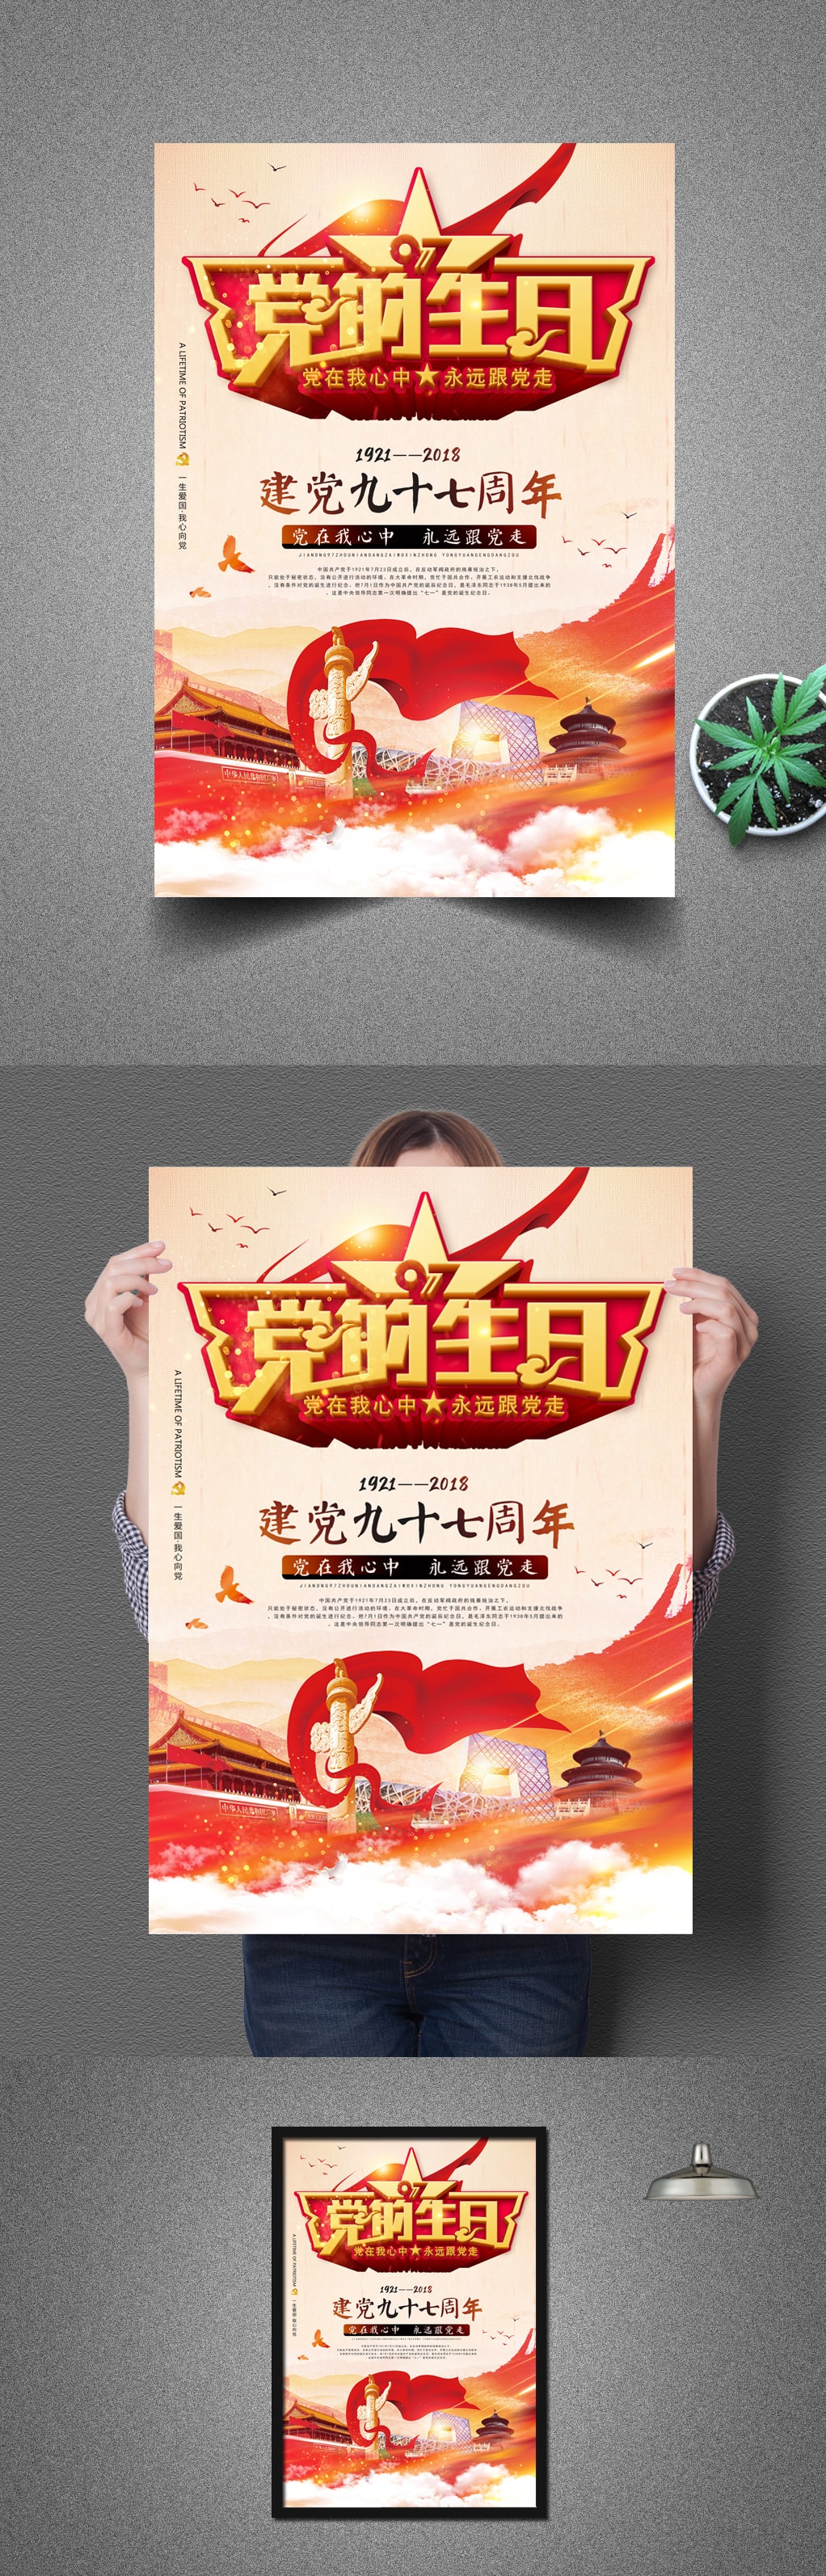 红色中国风7.1建党节党的生日宣传海报